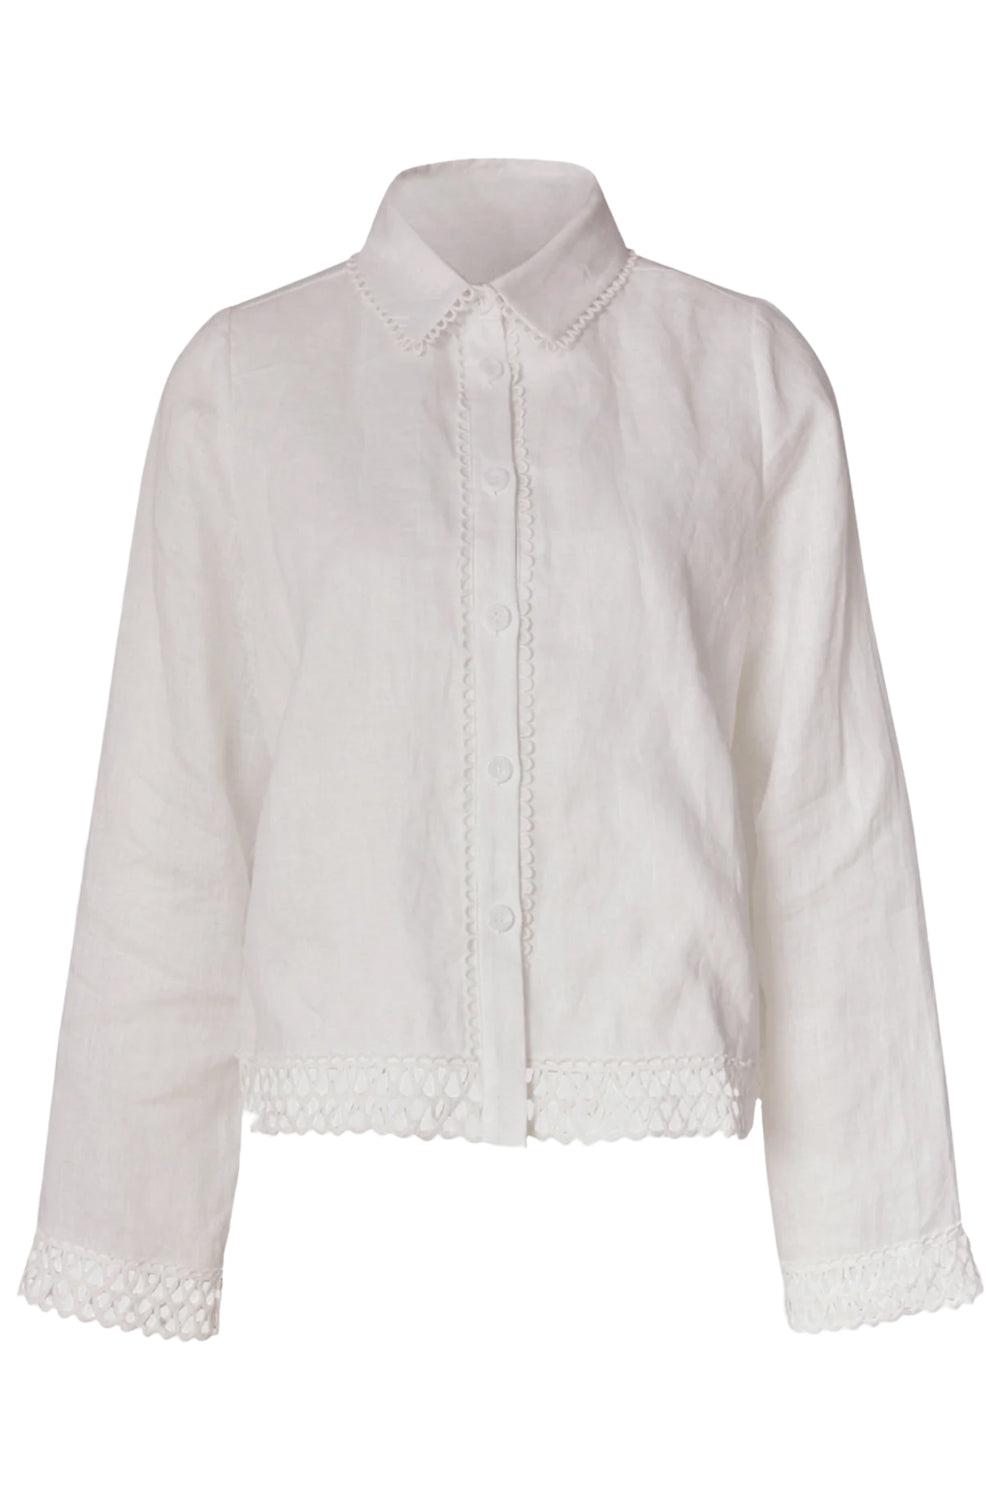 Agathia Shirt White